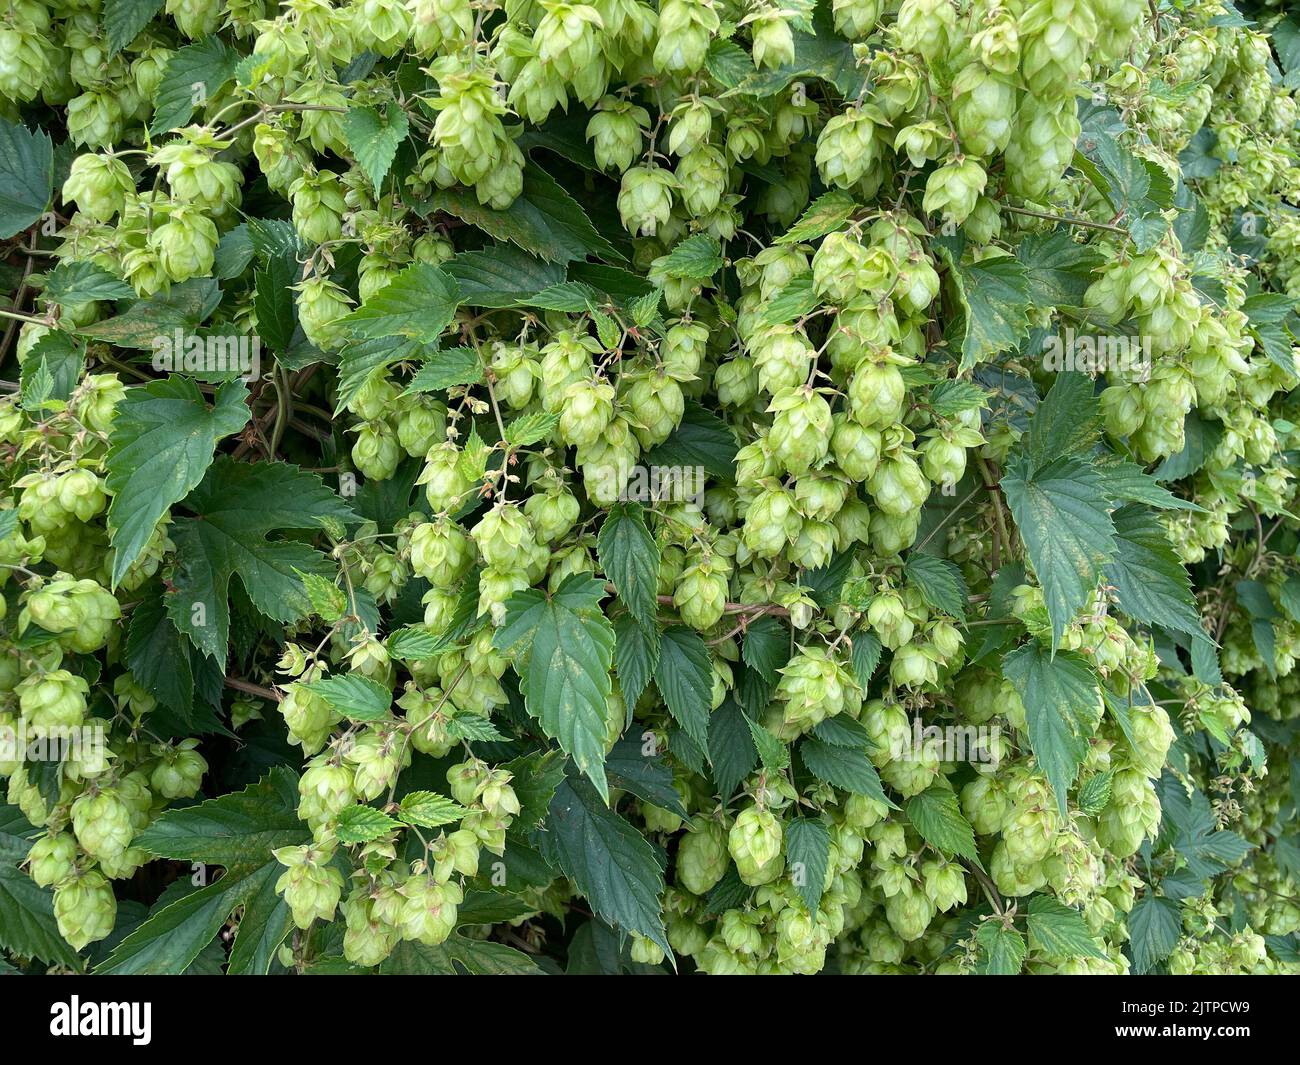 HOFFT auf die Frucht 0r Samenkegel der Hopfenpflanze Humulus lupulus. Phot6o: Tony Gale Stockfoto